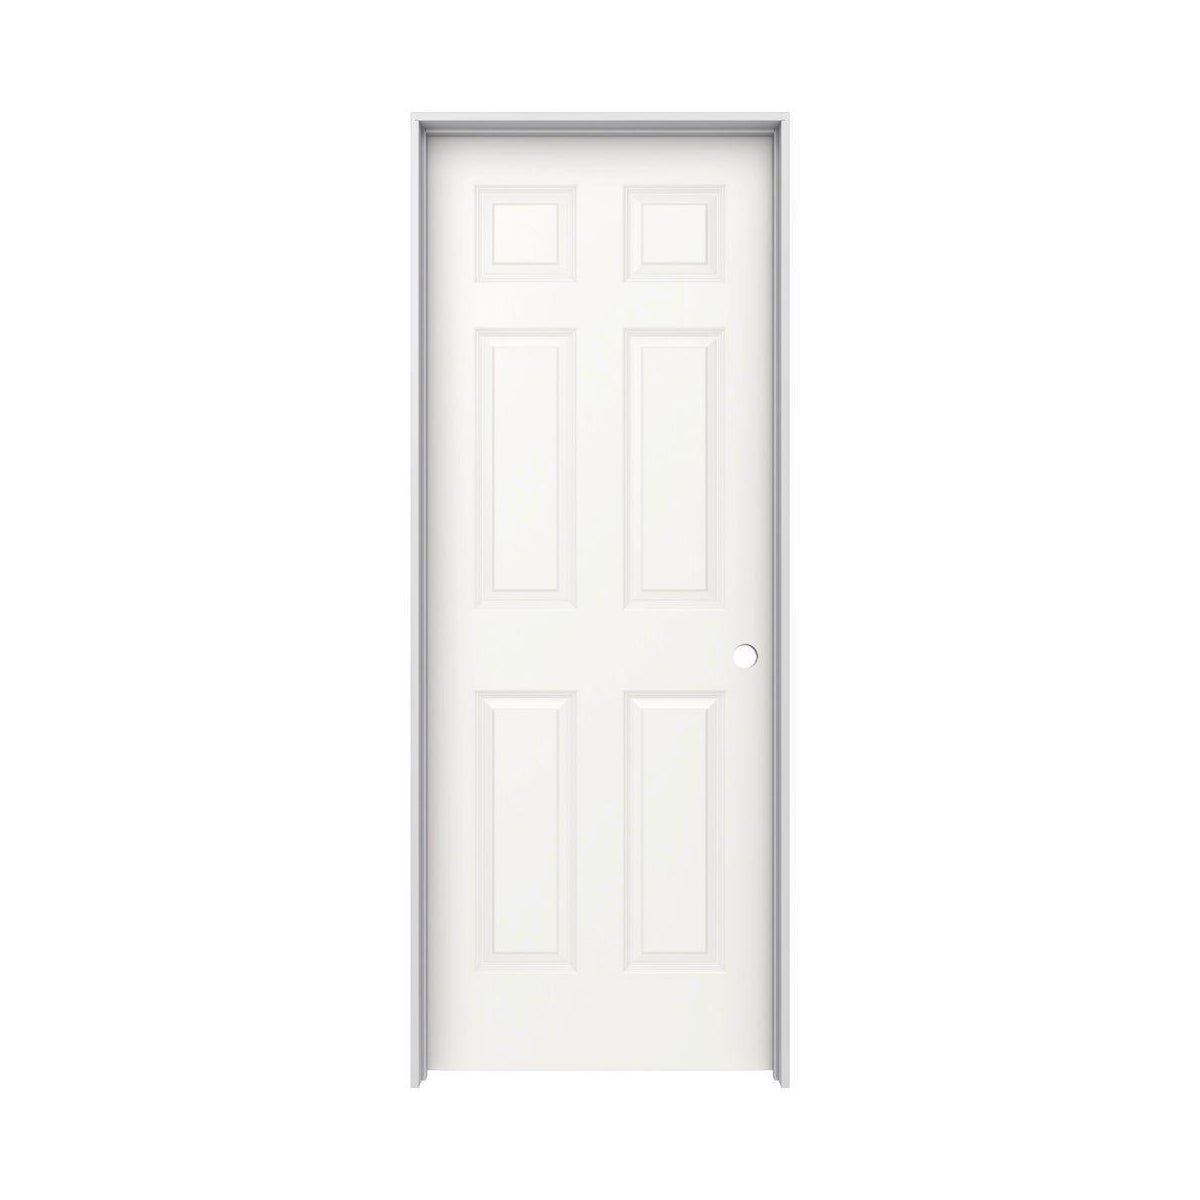 DOOR-LEFT-28"-6 PANEL-PRE-HUNG-4-1/2" JAMB